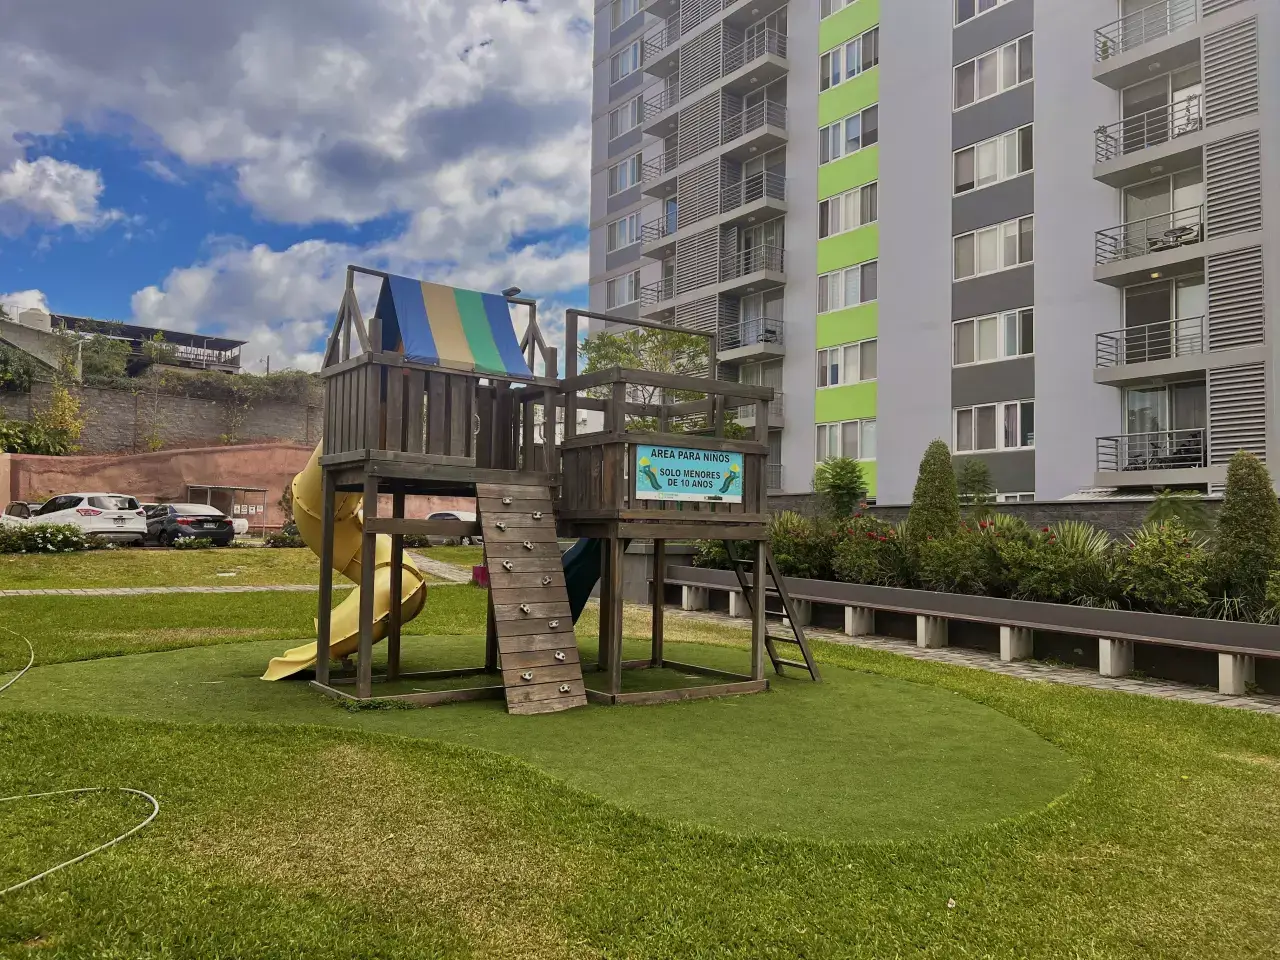 Área de juegos para niños cuentan con una casia de madera que cuentan con una resbaladillas de color amarillo con varia area verde, ademas los condominios cuentan con centro comercial, area de piscina.